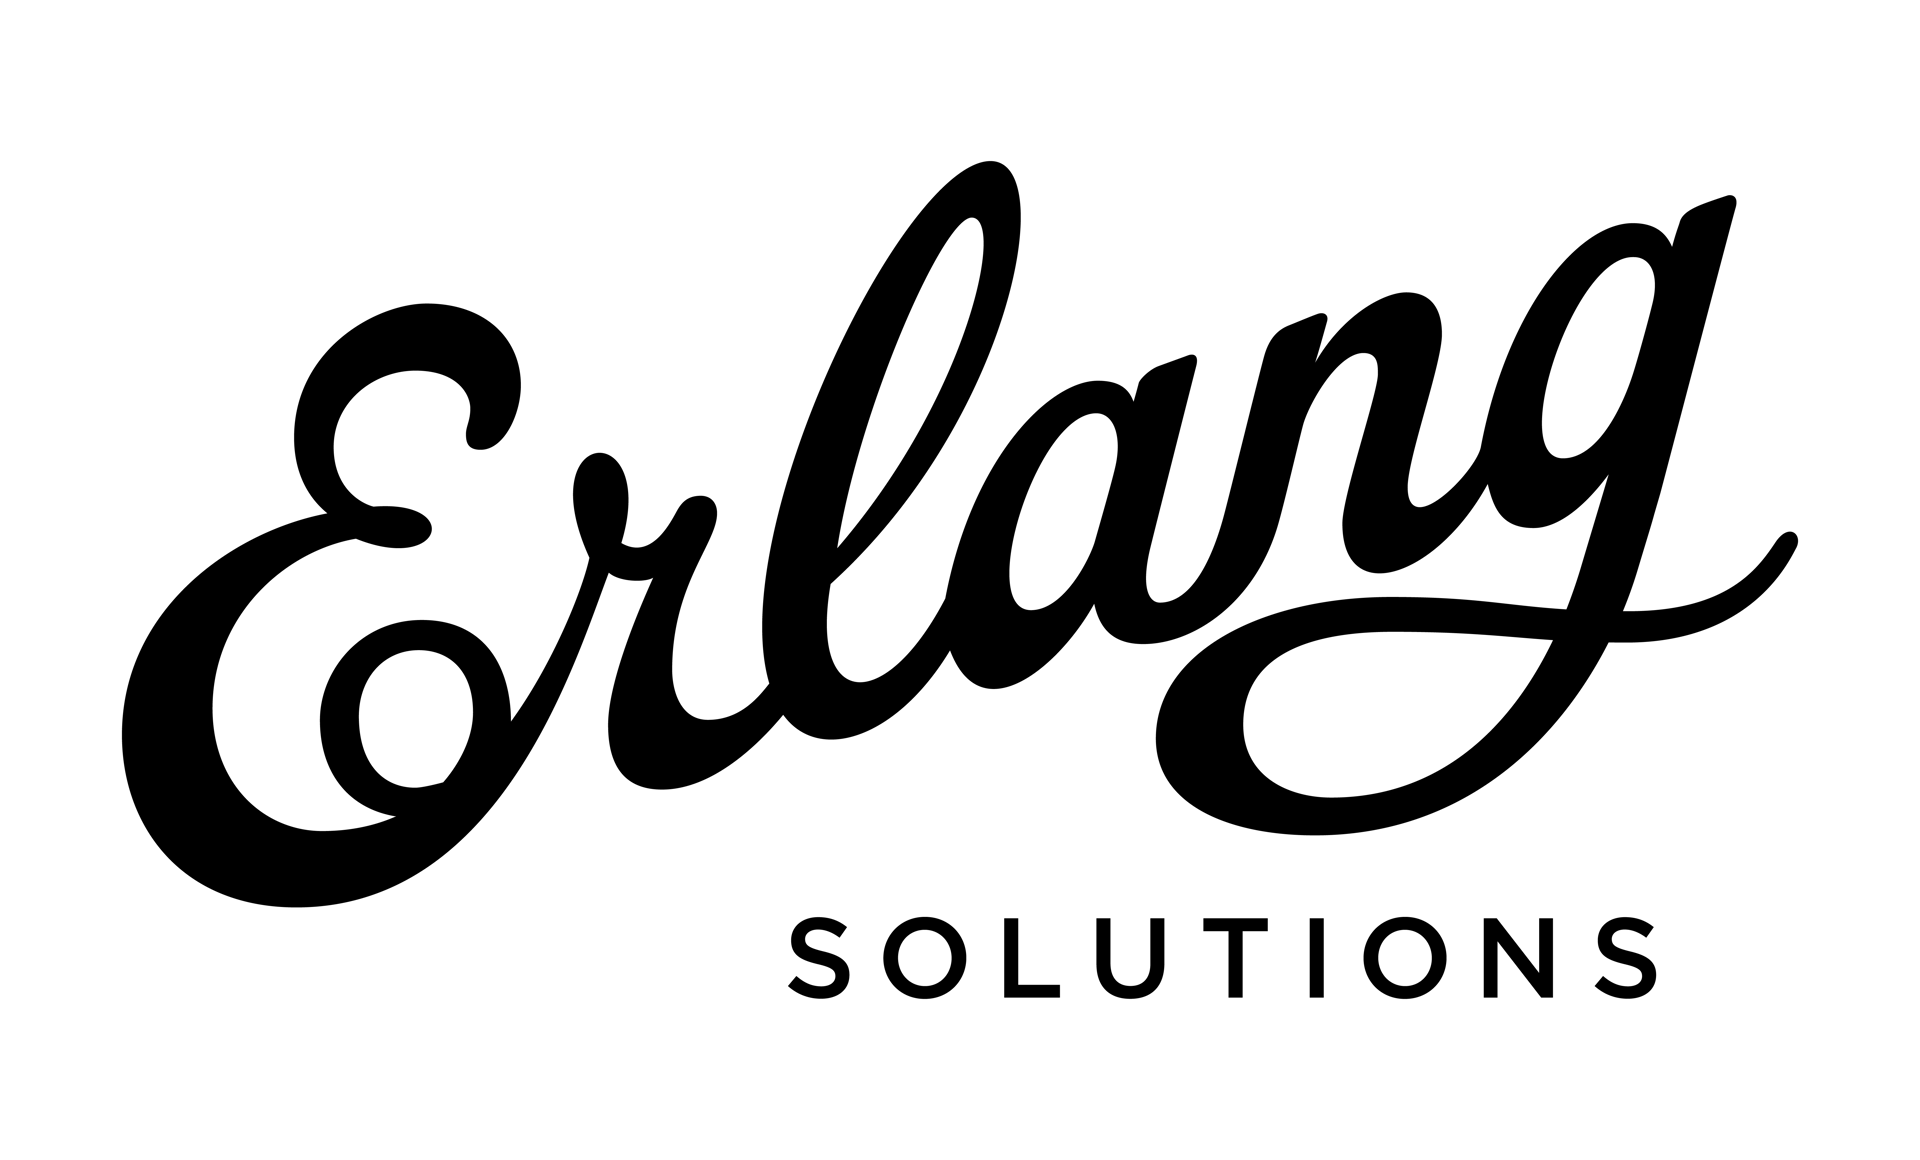 Erlang Solutions logo black